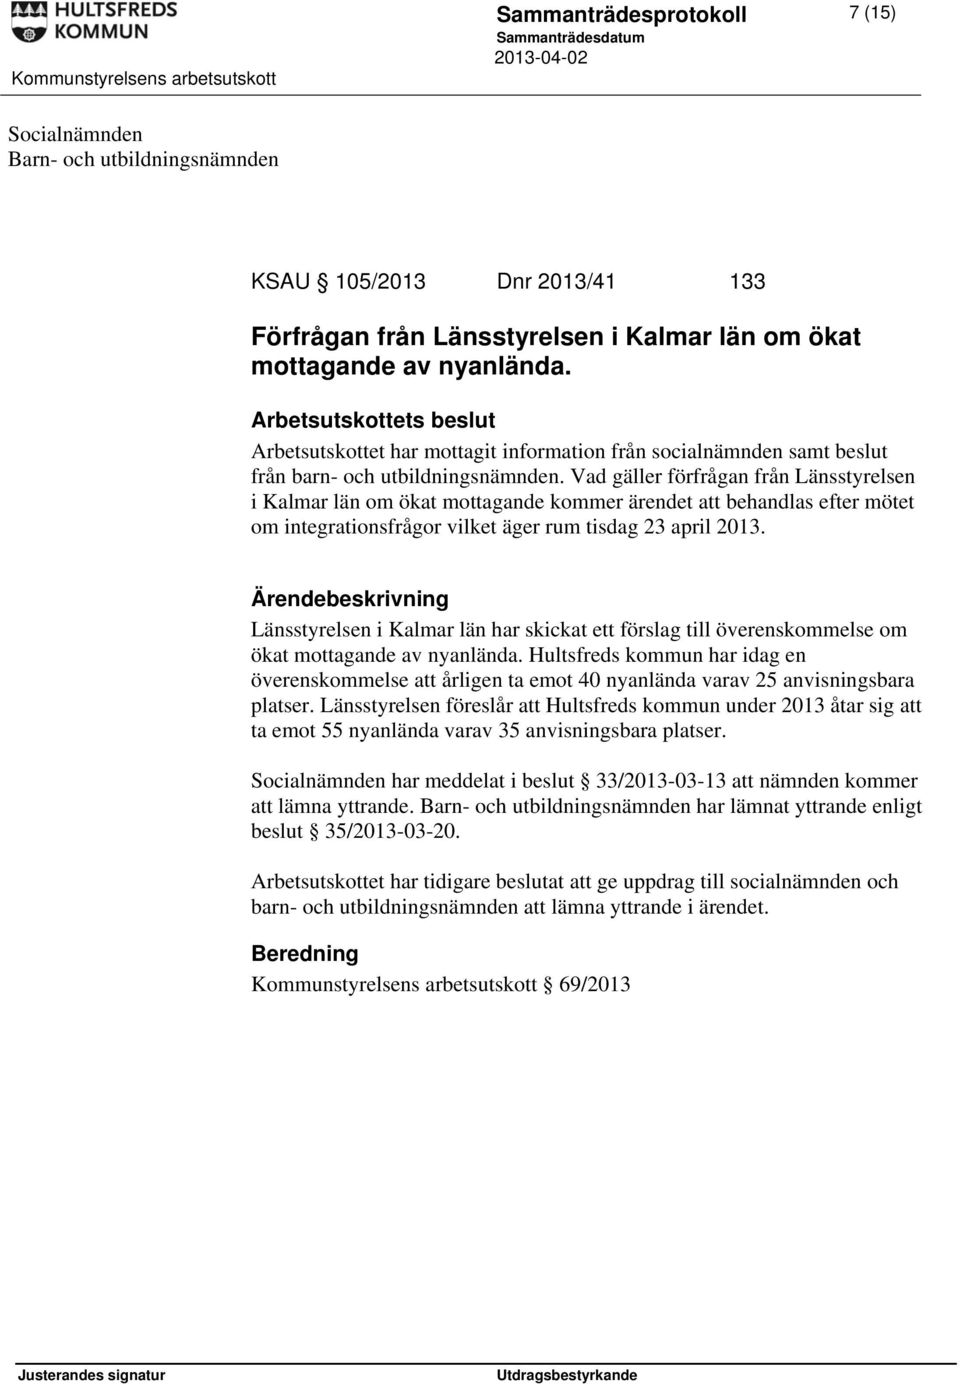 Vad gäller förfrågan från Länsstyrelsen i Kalmar län om ökat mottagande kommer ärendet att behandlas efter mötet om integrationsfrågor vilket äger rum tisdag 23 april 2013.